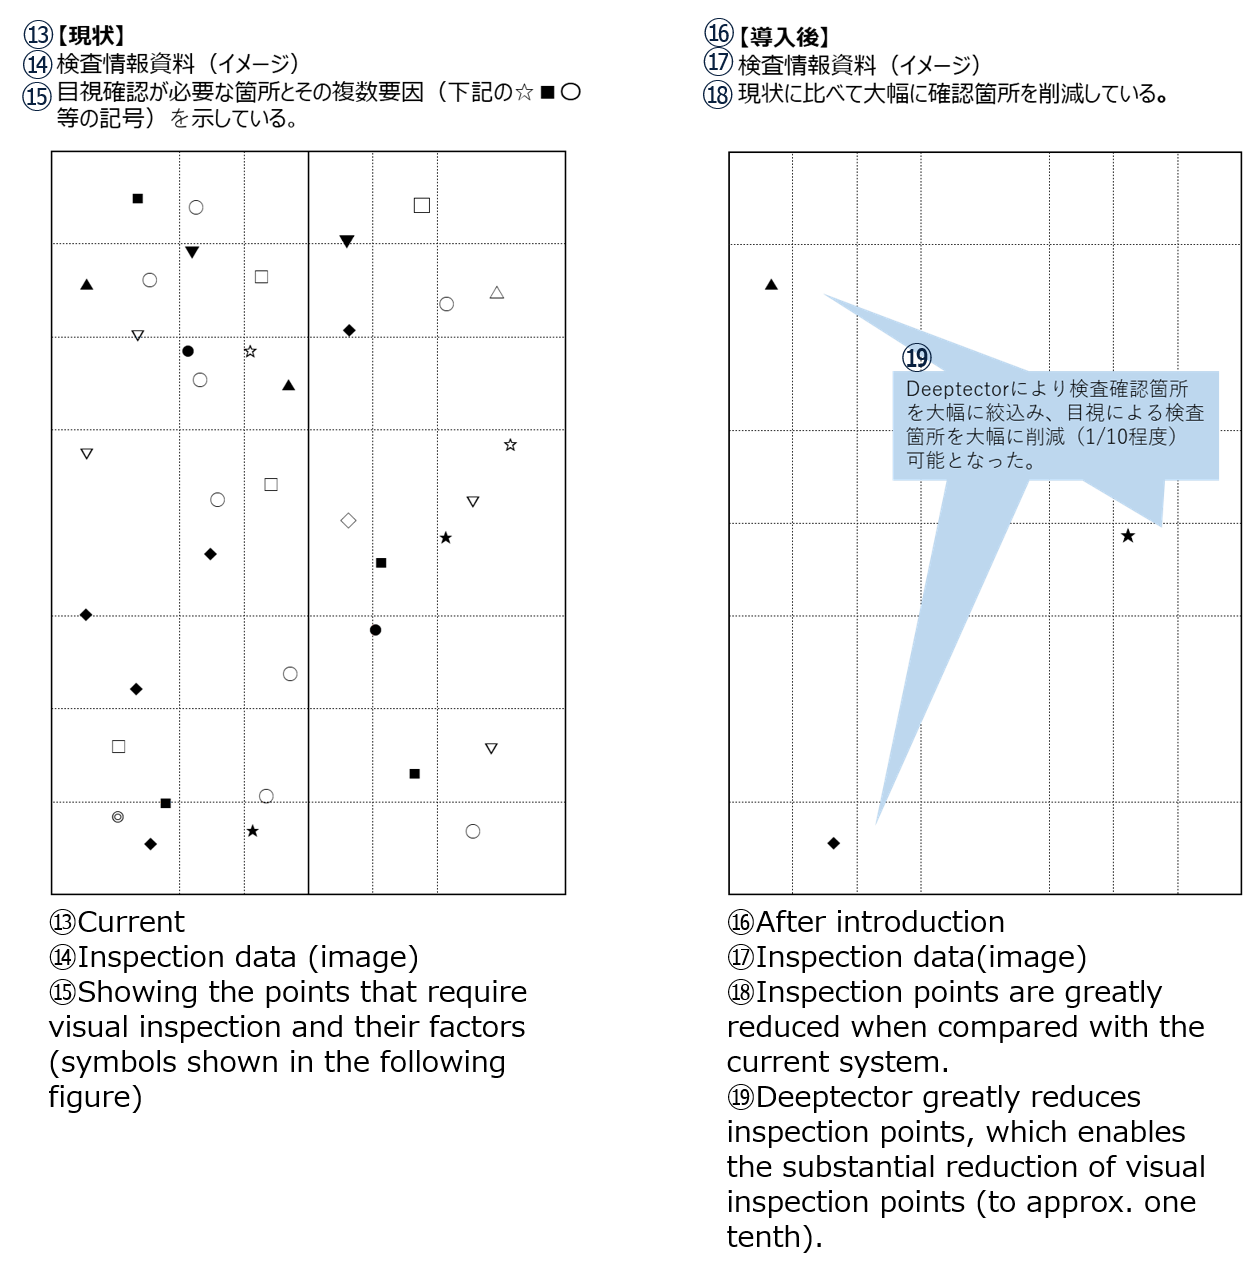 Operation flow diagram‚Q